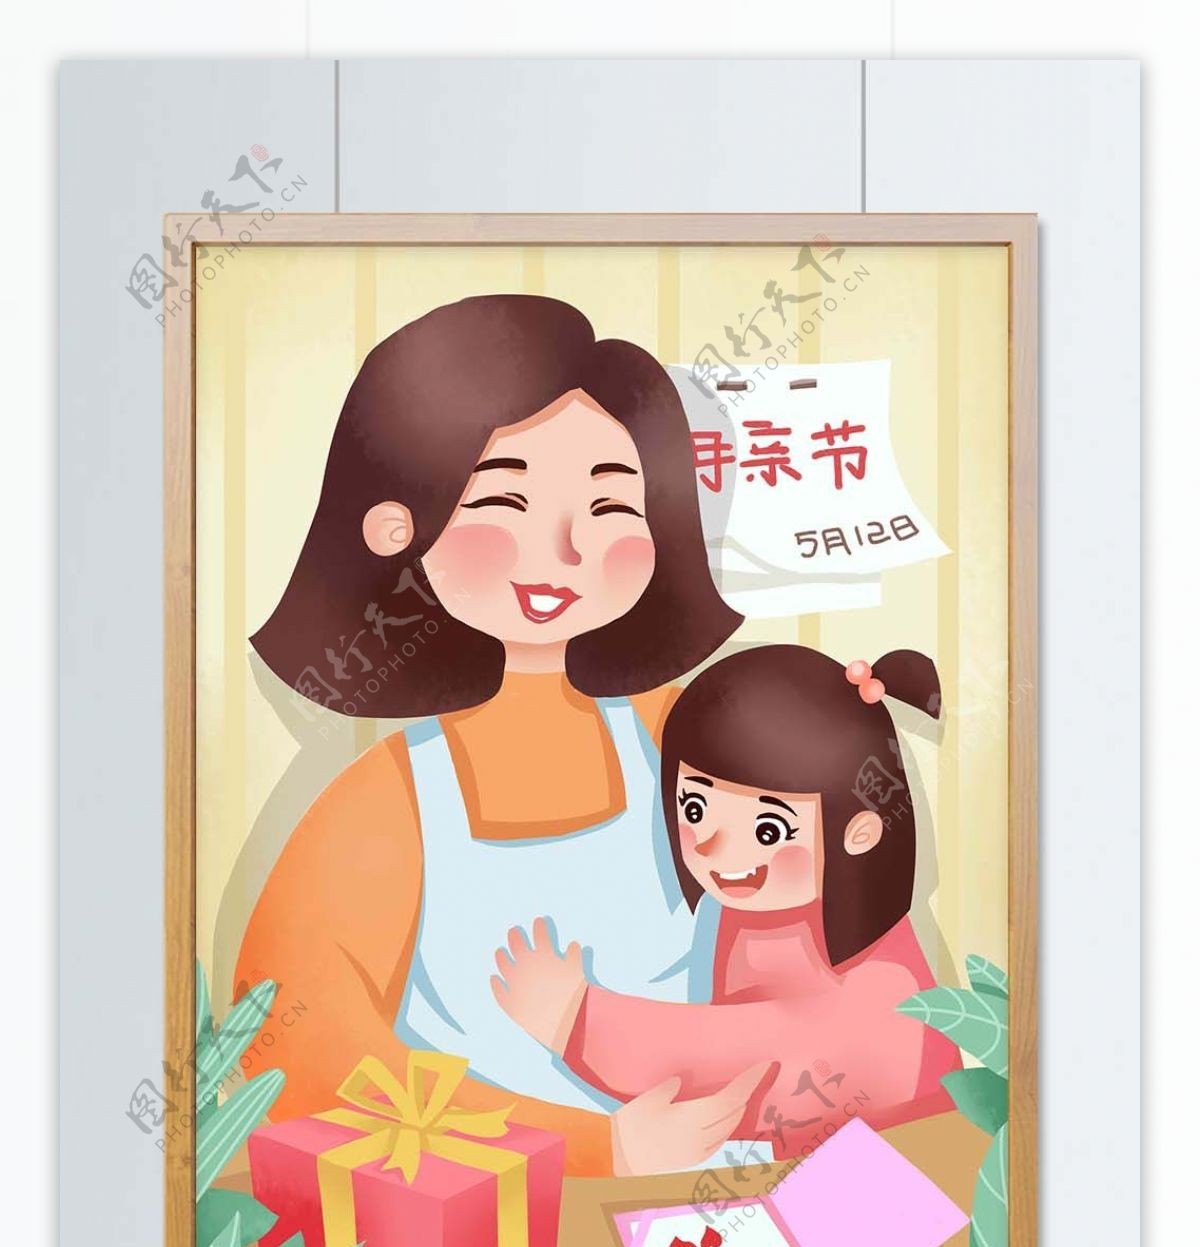 节日母亲节妈妈女儿小女孩拥抱礼物贺卡插画